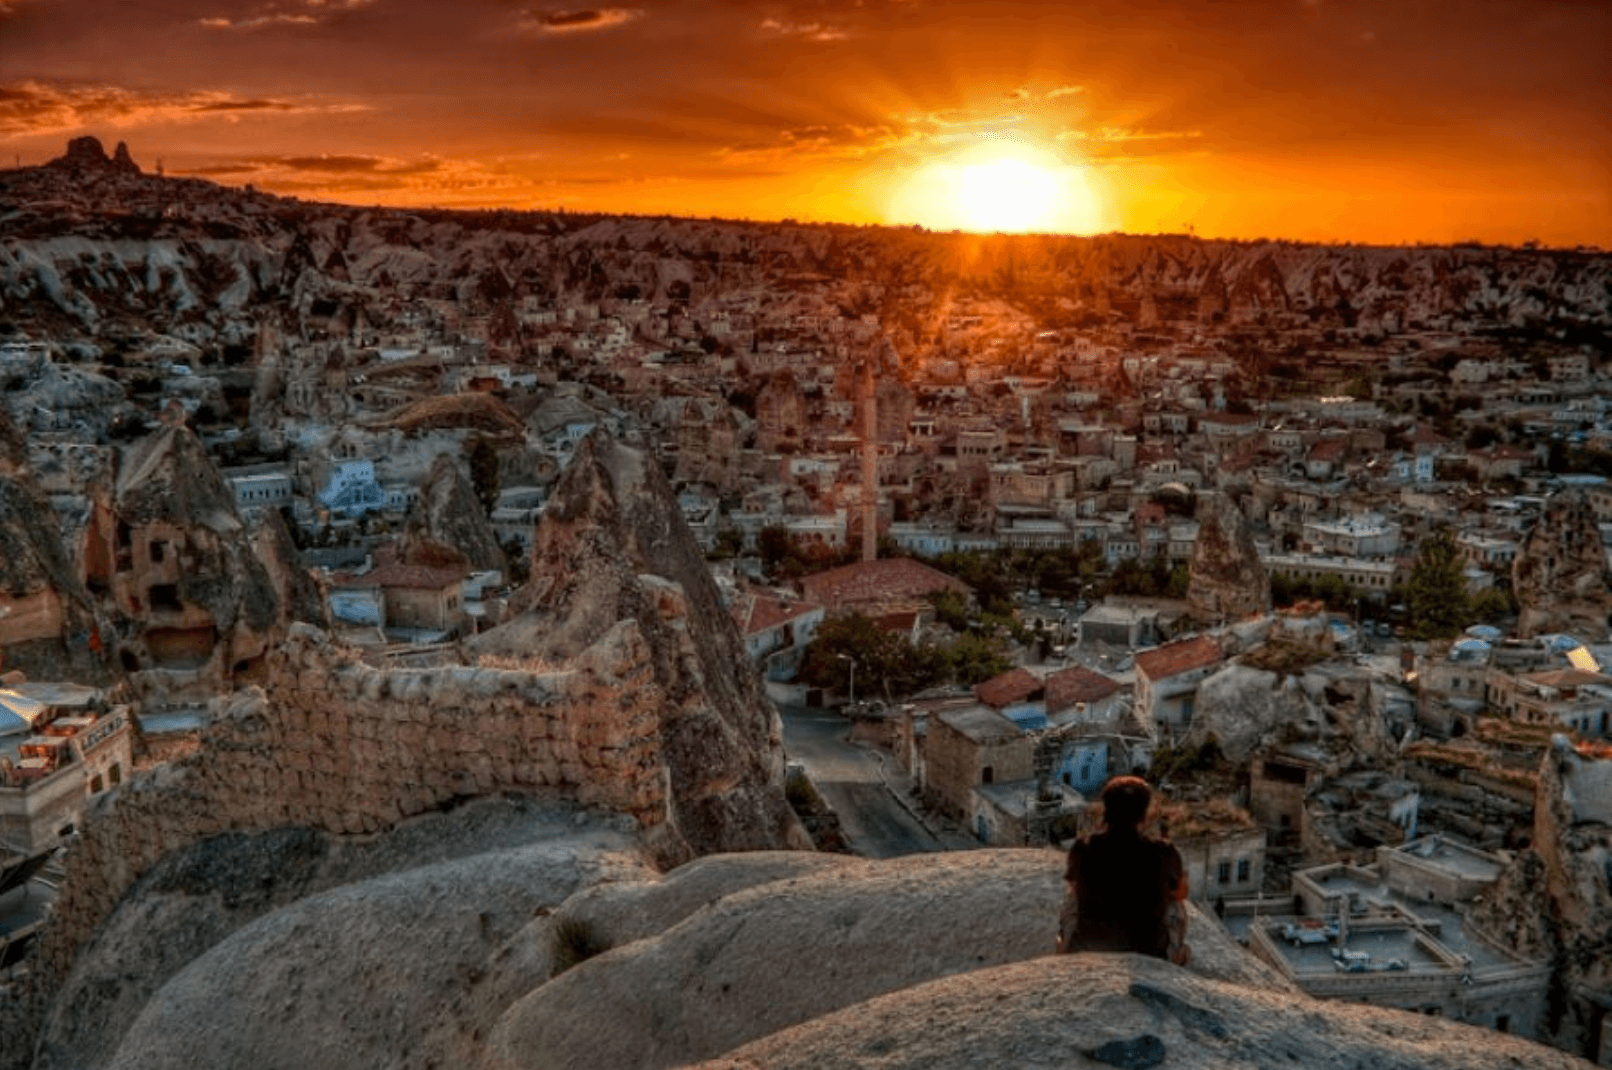 Daily tours Cappadocia ballooning